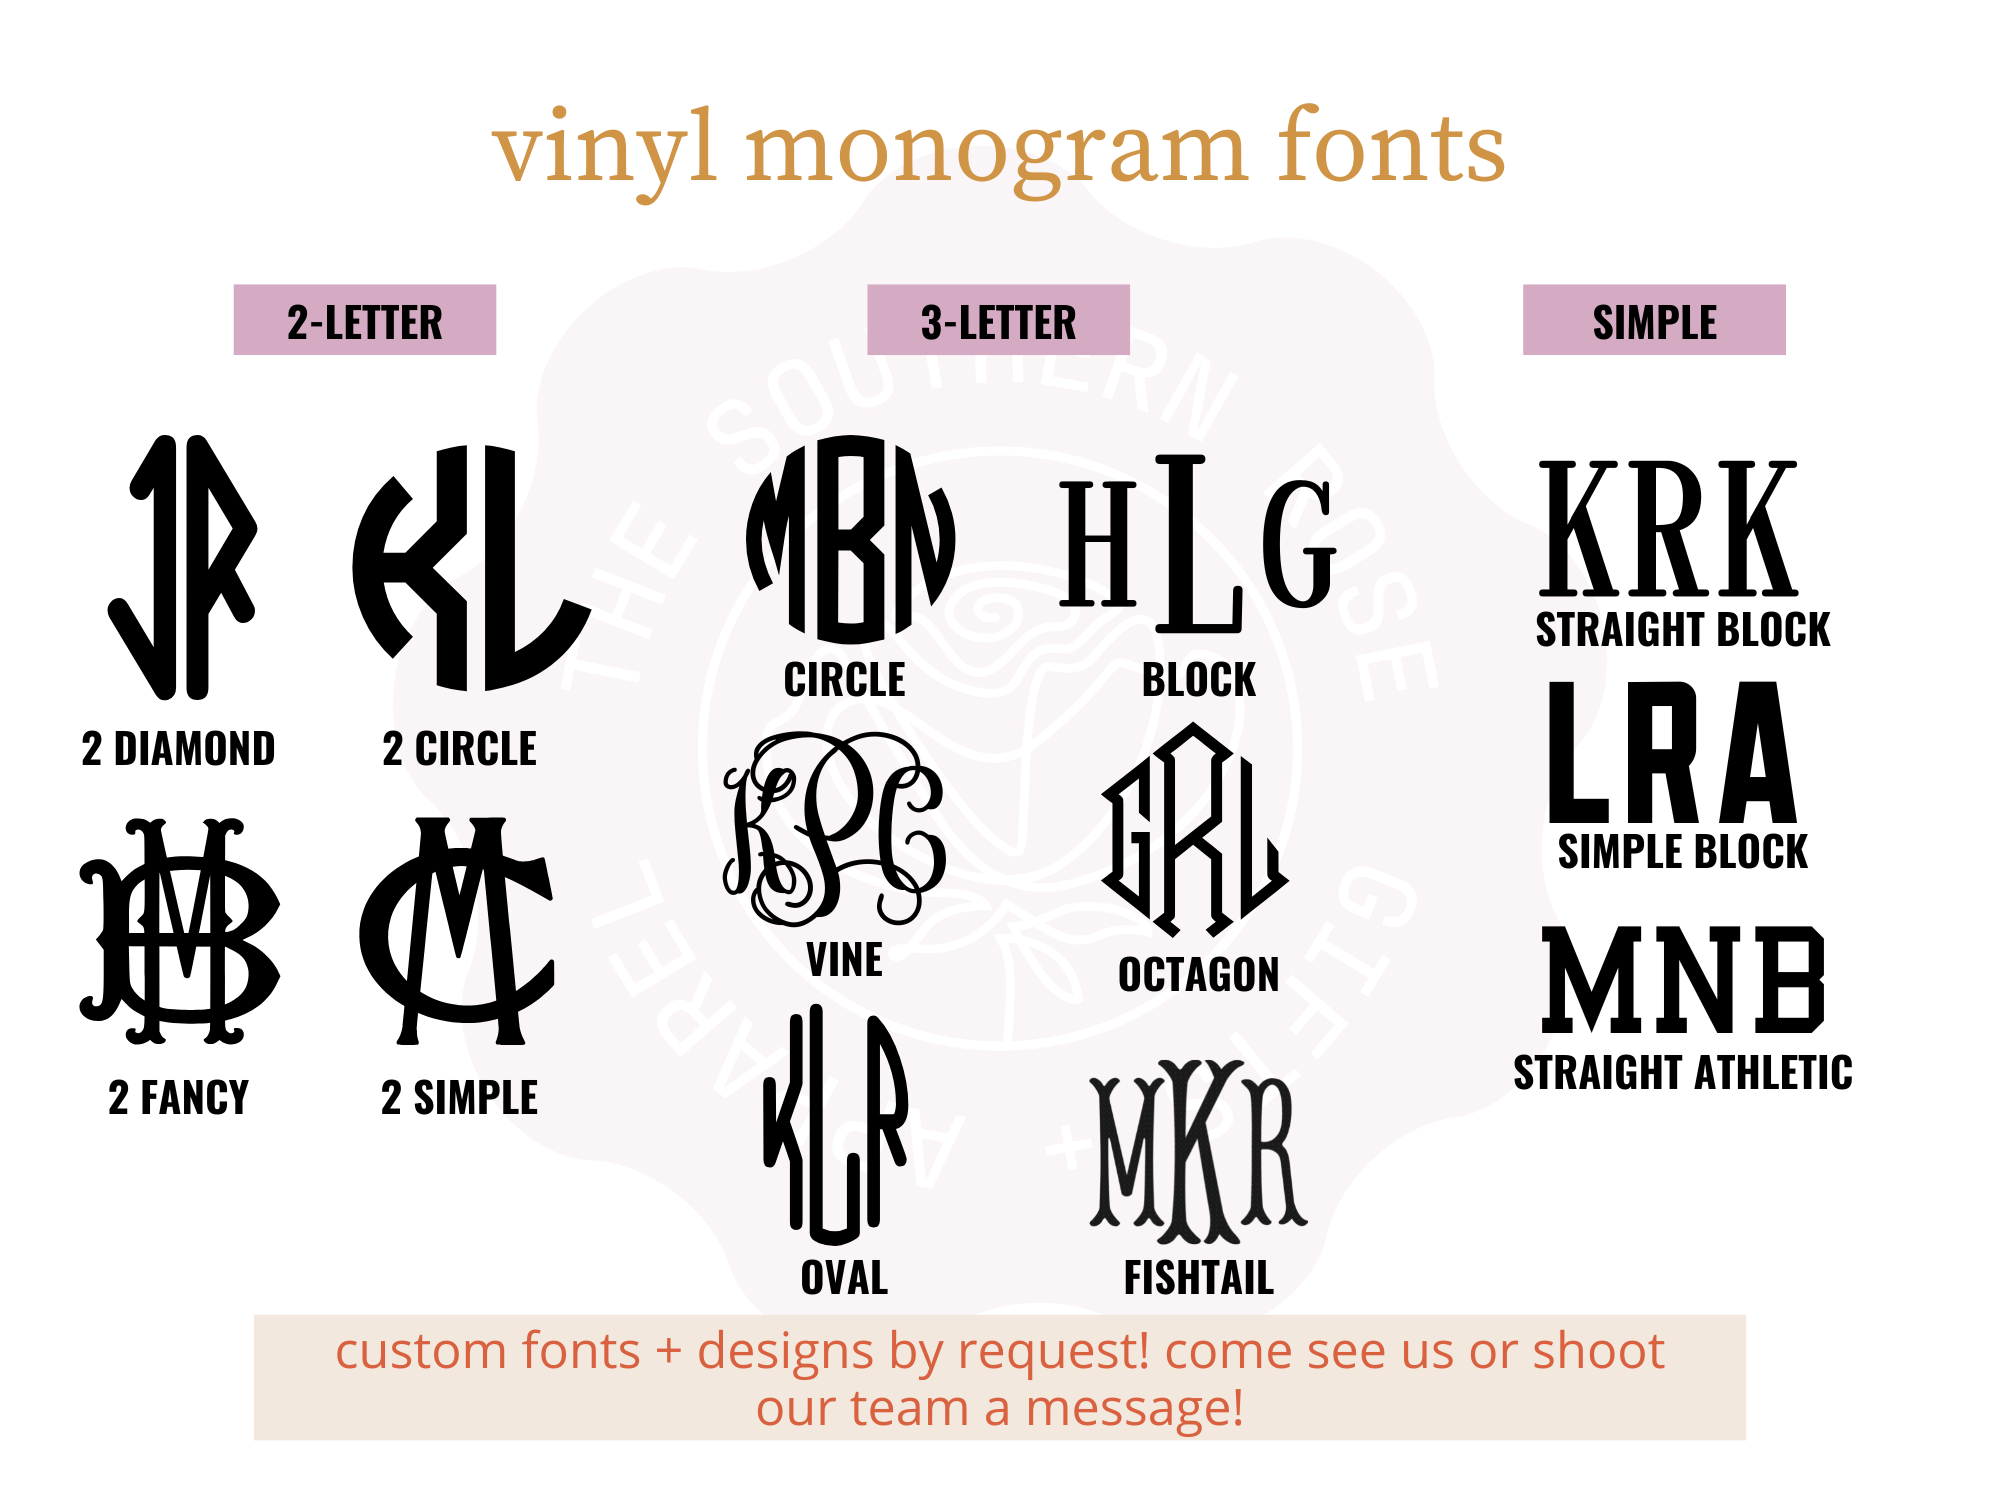 https://cdn11.bigcommerce.com/s-qiszfjgfwj/images/stencil/original/products/3942/15829/tsr2-vinyl-monogram-fonts__10445.1689362843.png?c=2